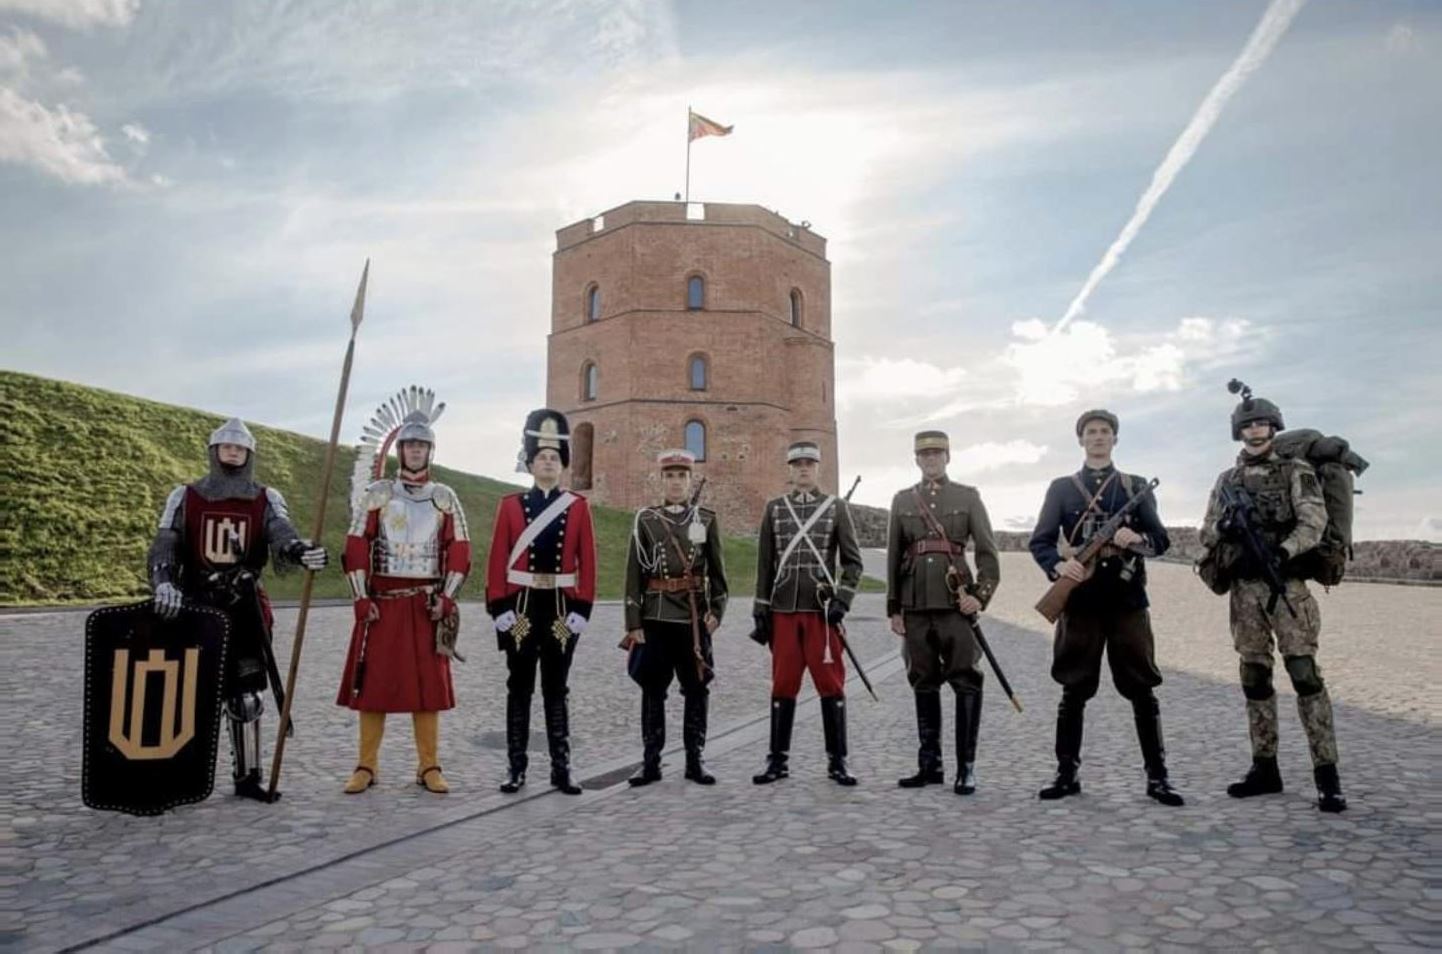 Фотография, размещенная литовской армией в честь Дня Государства, 6 июля 2021 г. На фото показаны литовские воины разных эпох на фоне башни замка Гедемина.